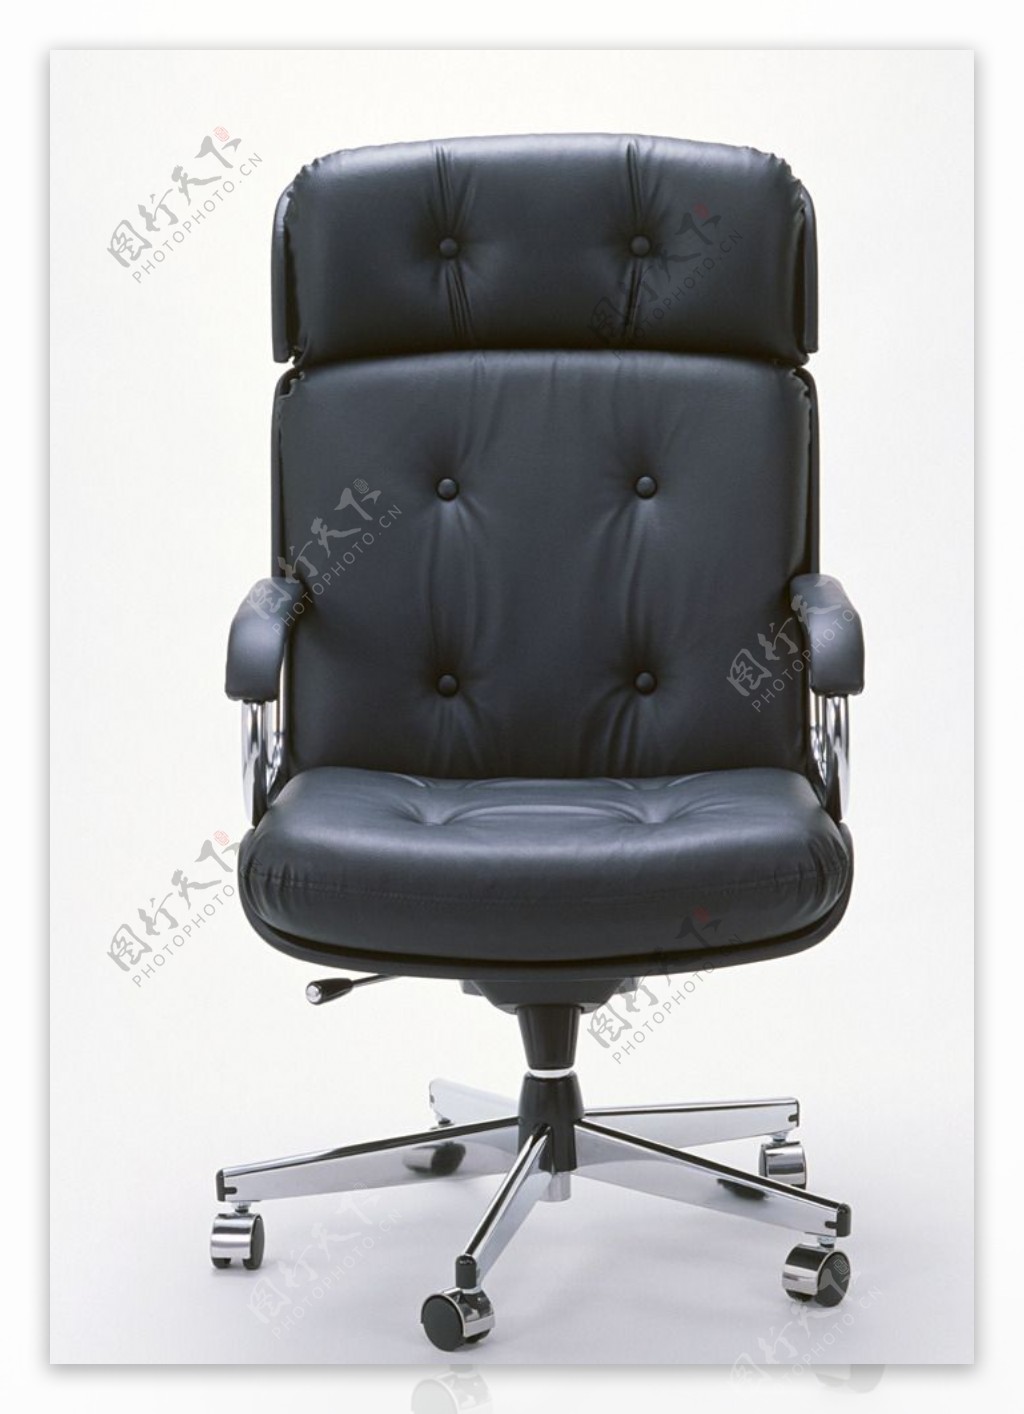 椅子老款老板椅黑图片